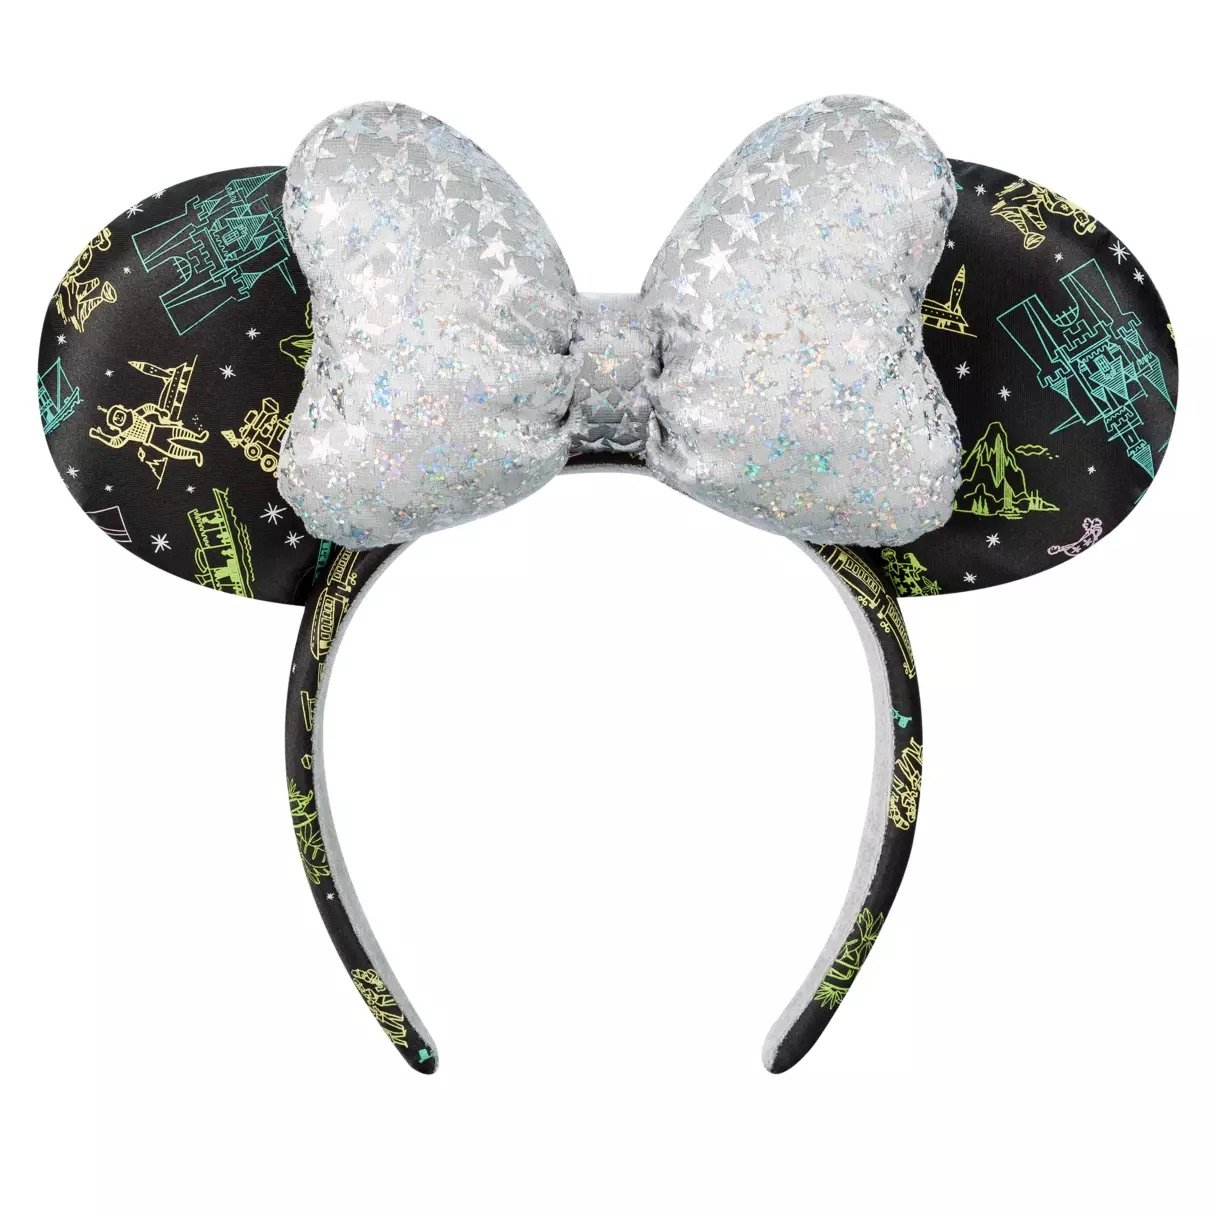 DLR - 100 Years of Wonder - Mickey Ear Hat Lid & Friends “Disneyland R —  USShoppingSOS